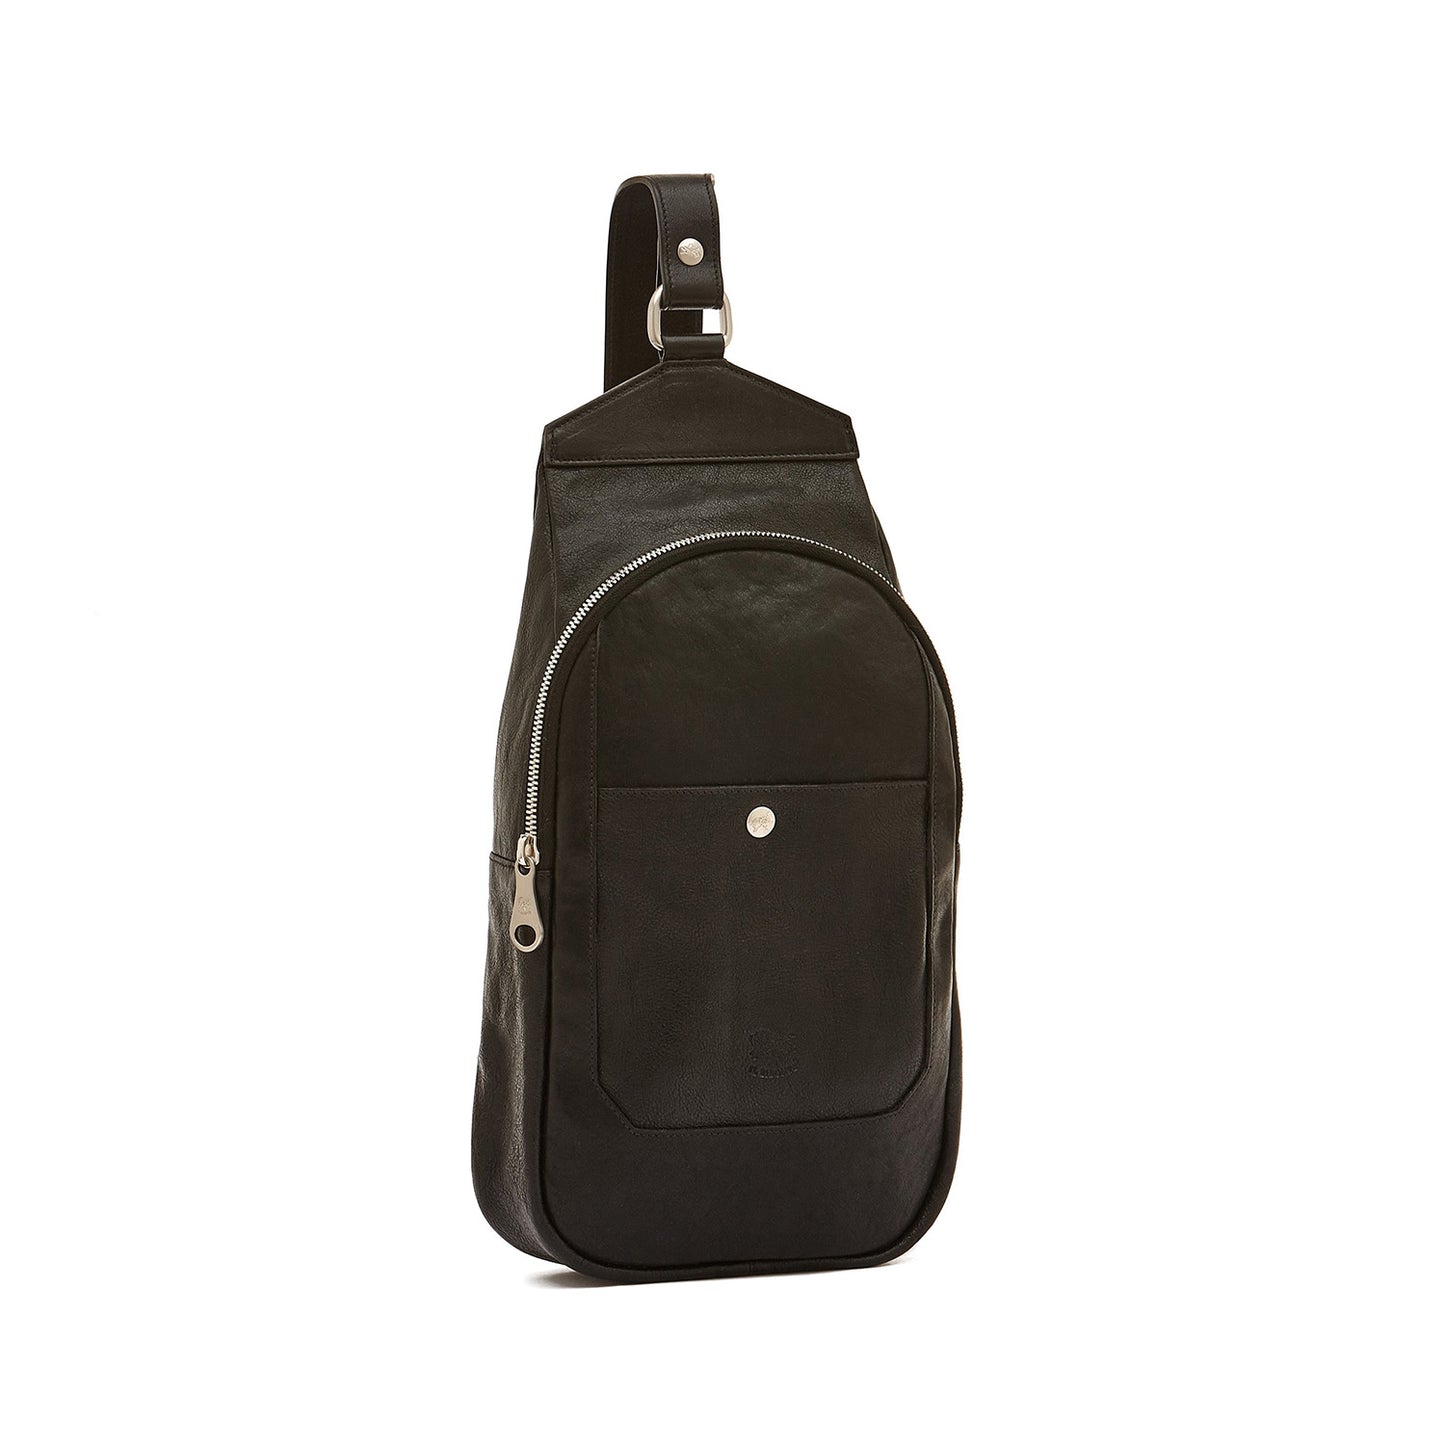 Cosimo Single Strap Backpack in Black